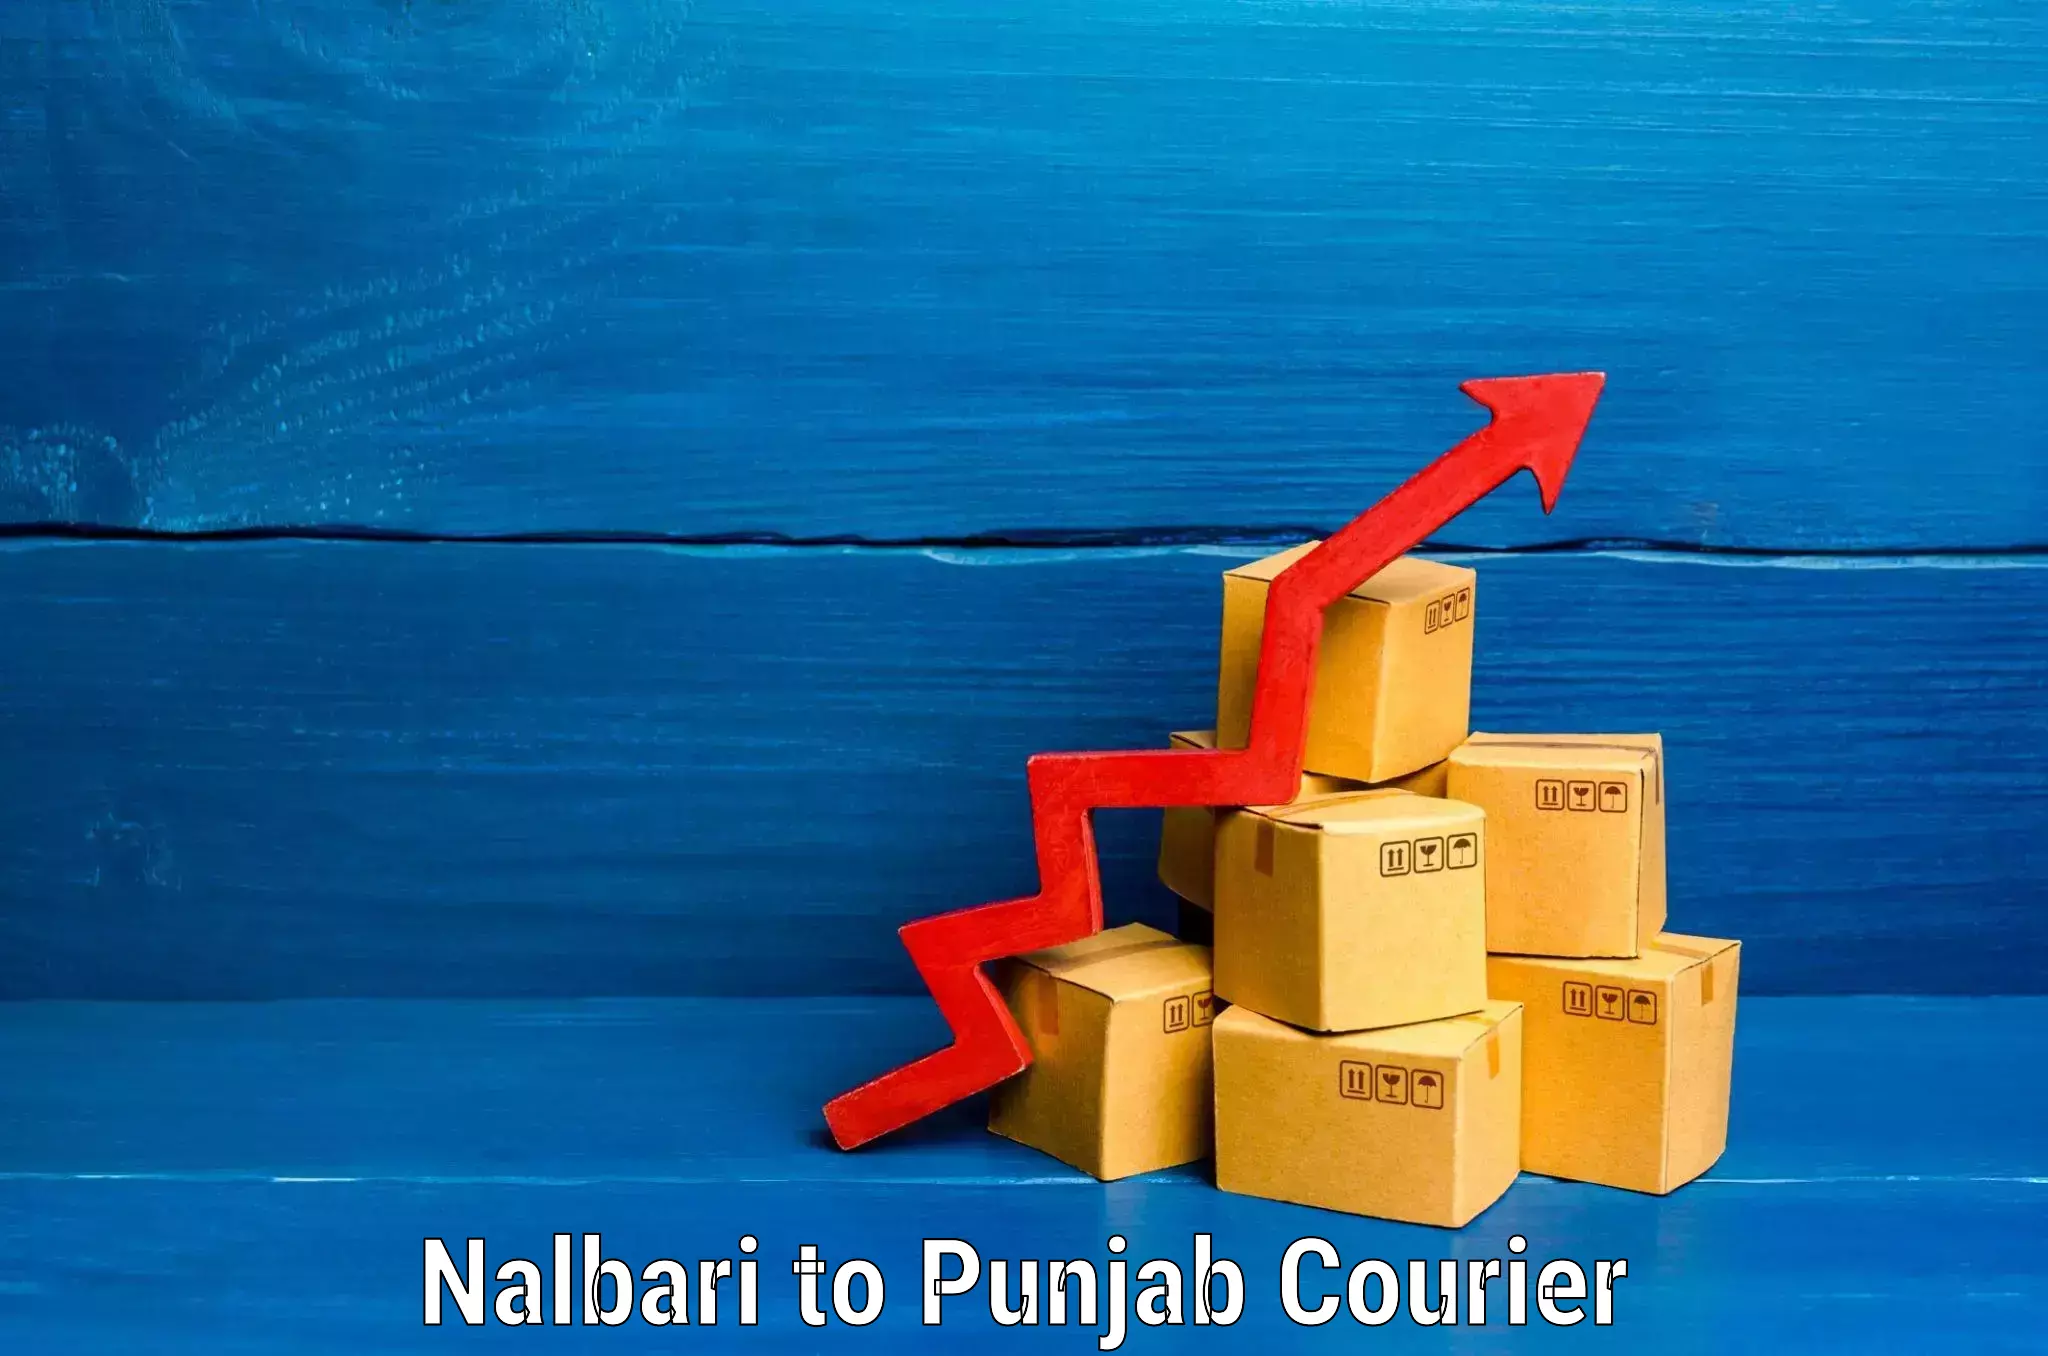 Baggage transport scheduler Nalbari to Punjab